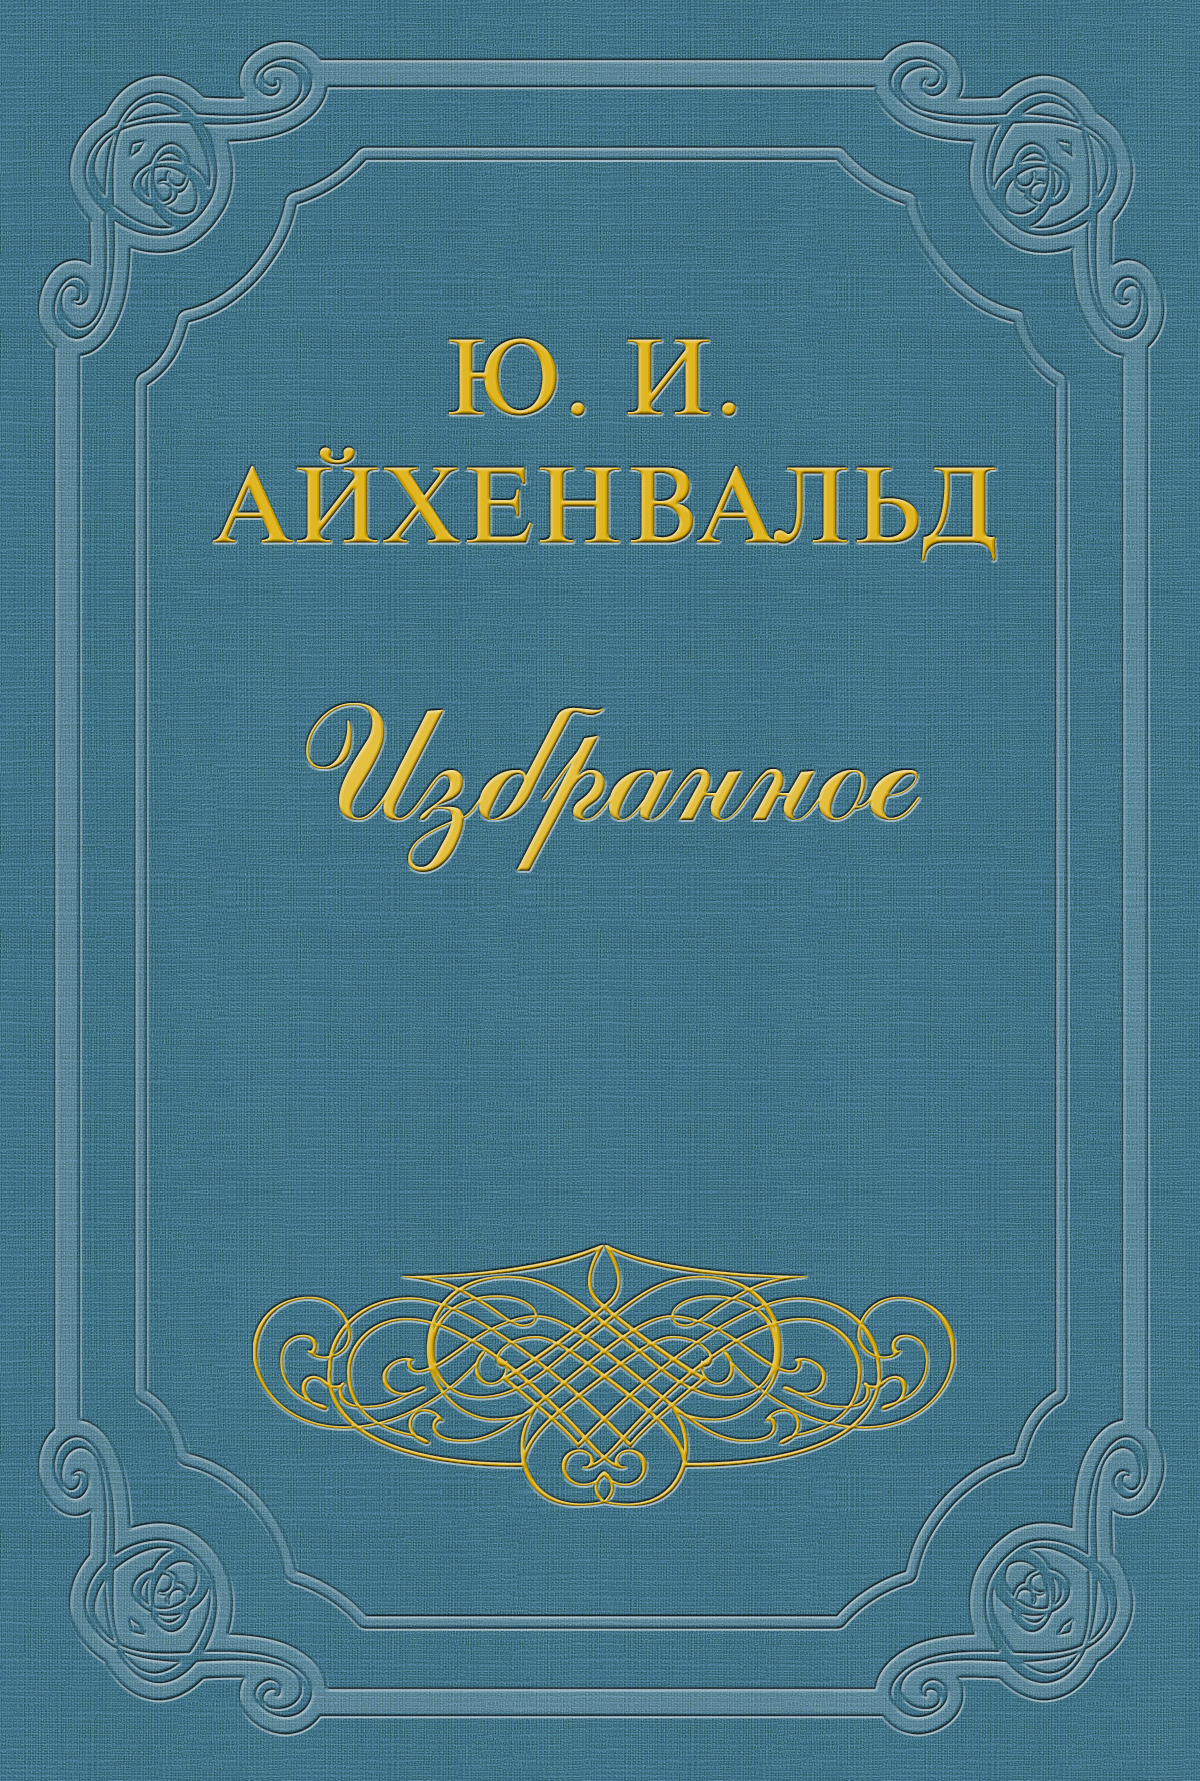 Книга Щербина из серии , созданная Юлий Айхенвальд, может относится к жанру Критика. Стоимость книги Щербина  с идентификатором 2610485 составляет 9.99 руб.